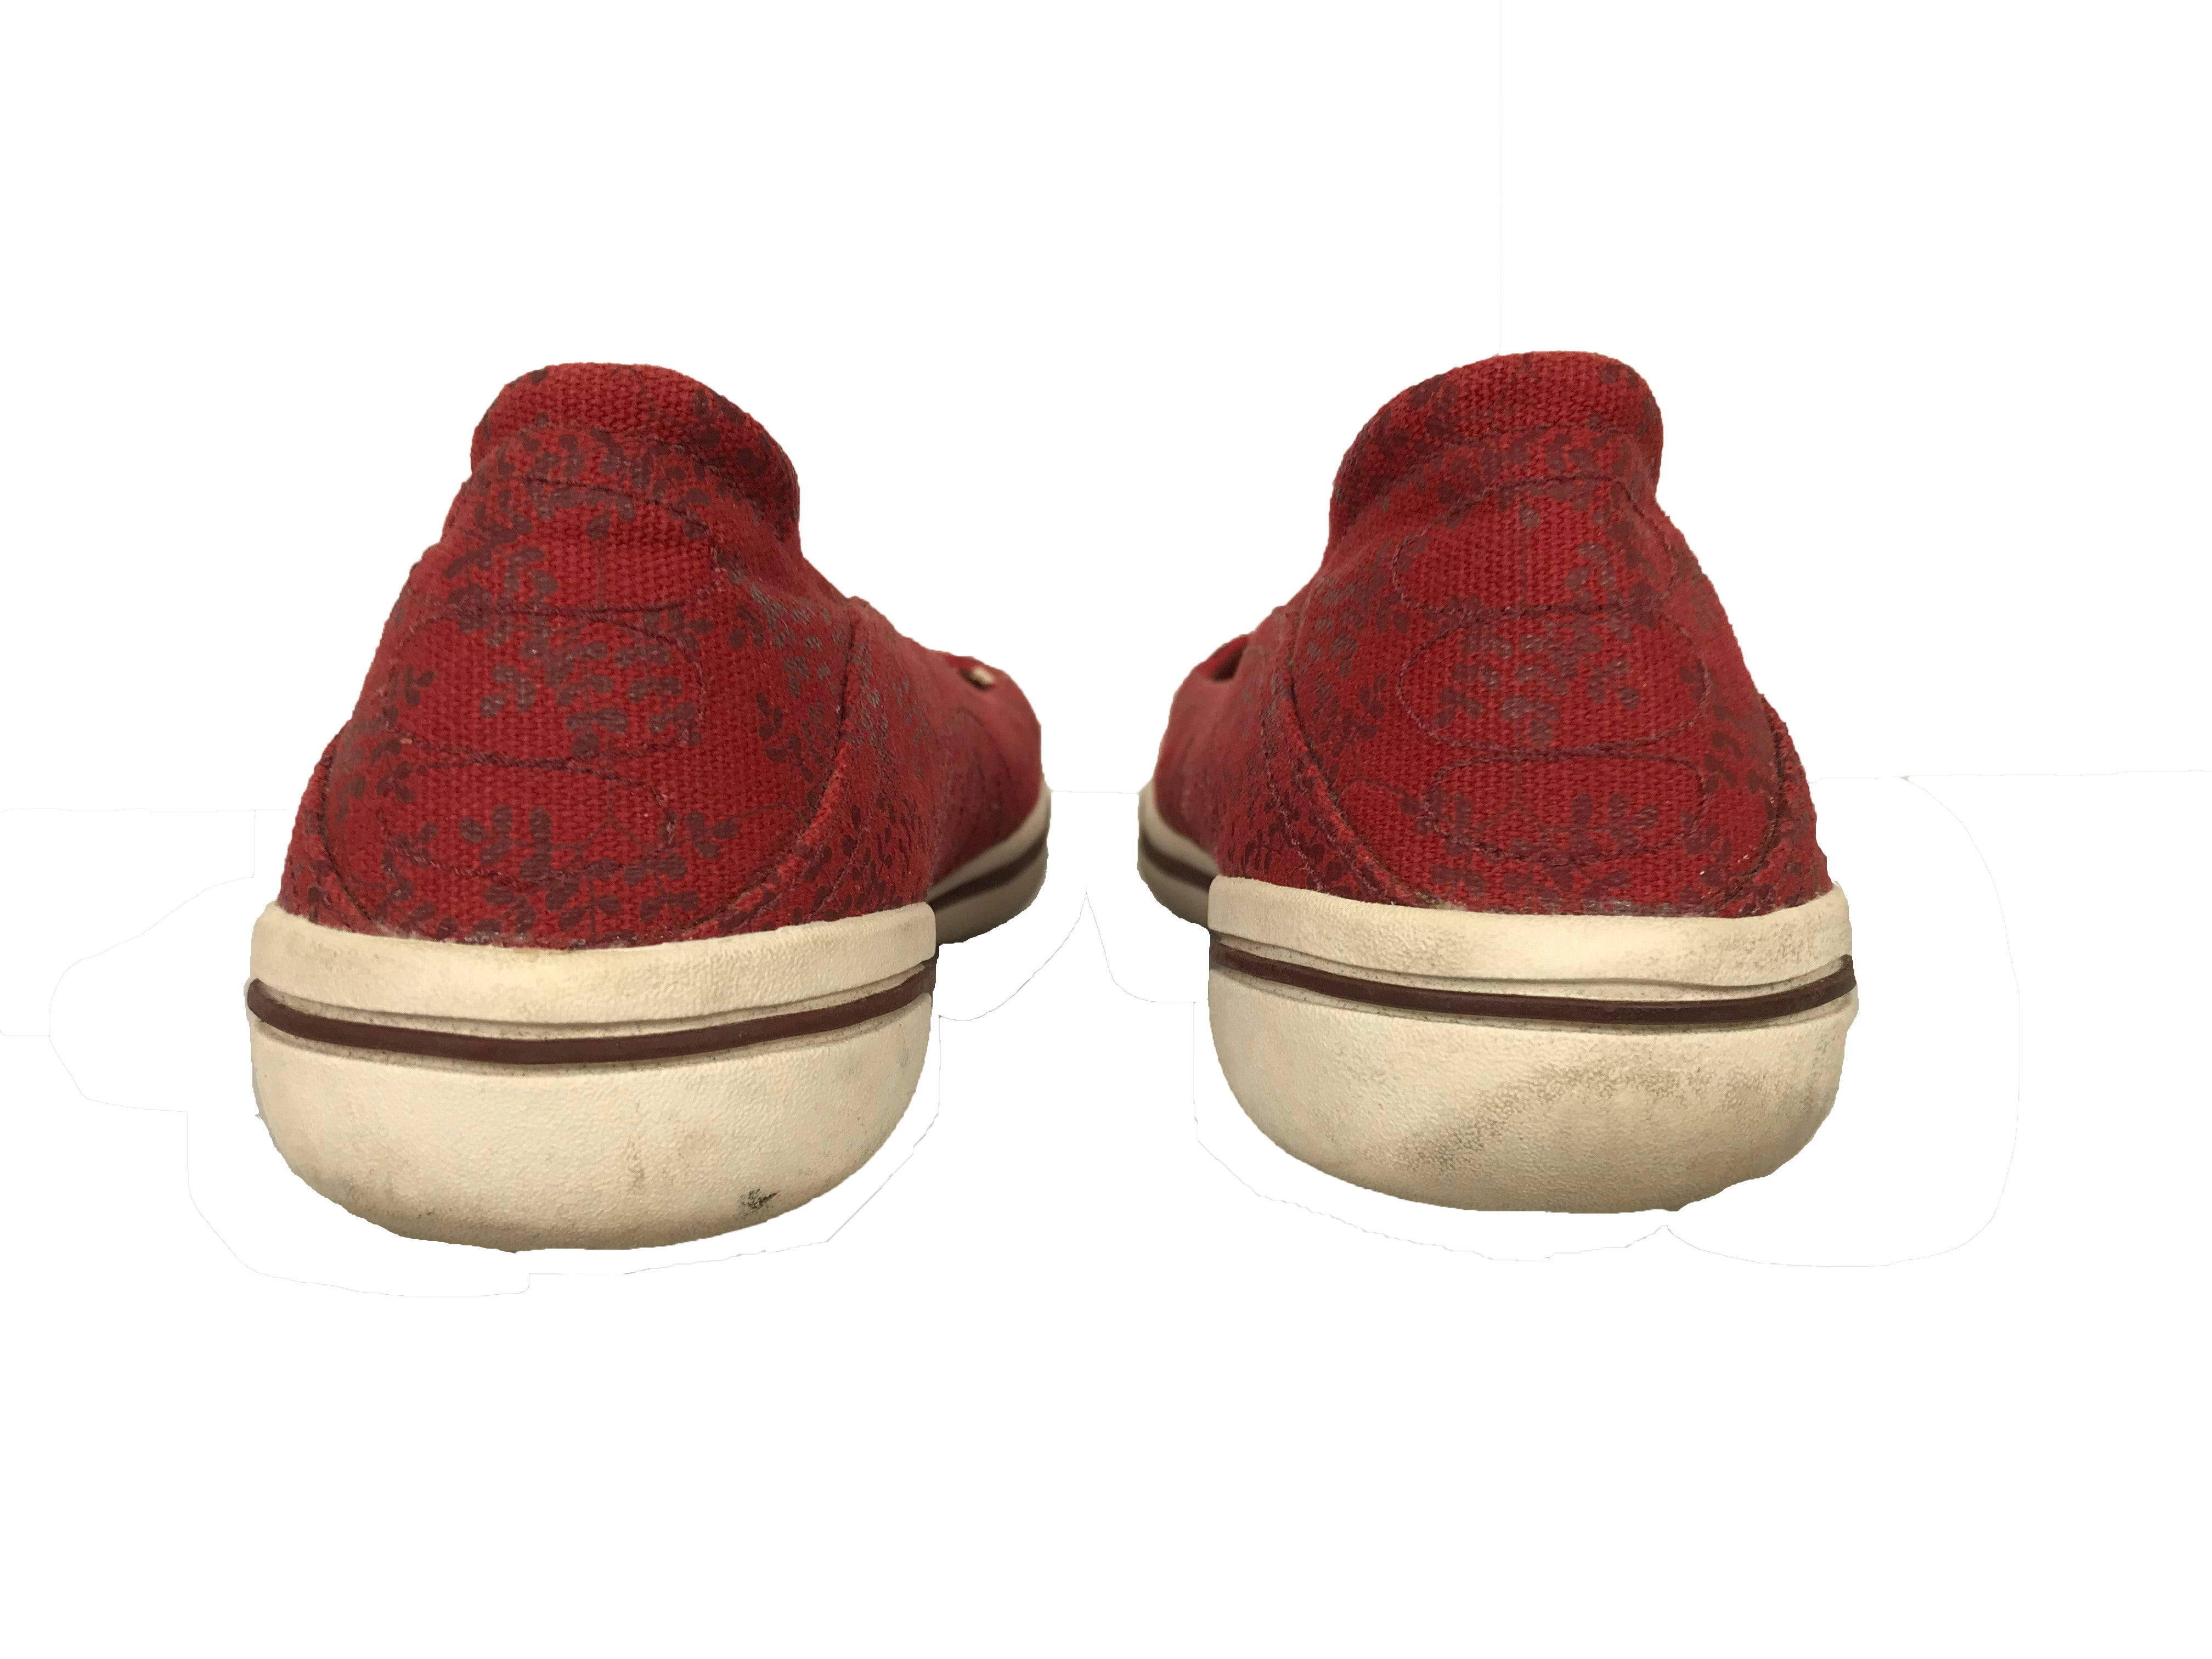 Merrell Luna Sport Slip-On Red Shoe Women's Size 9